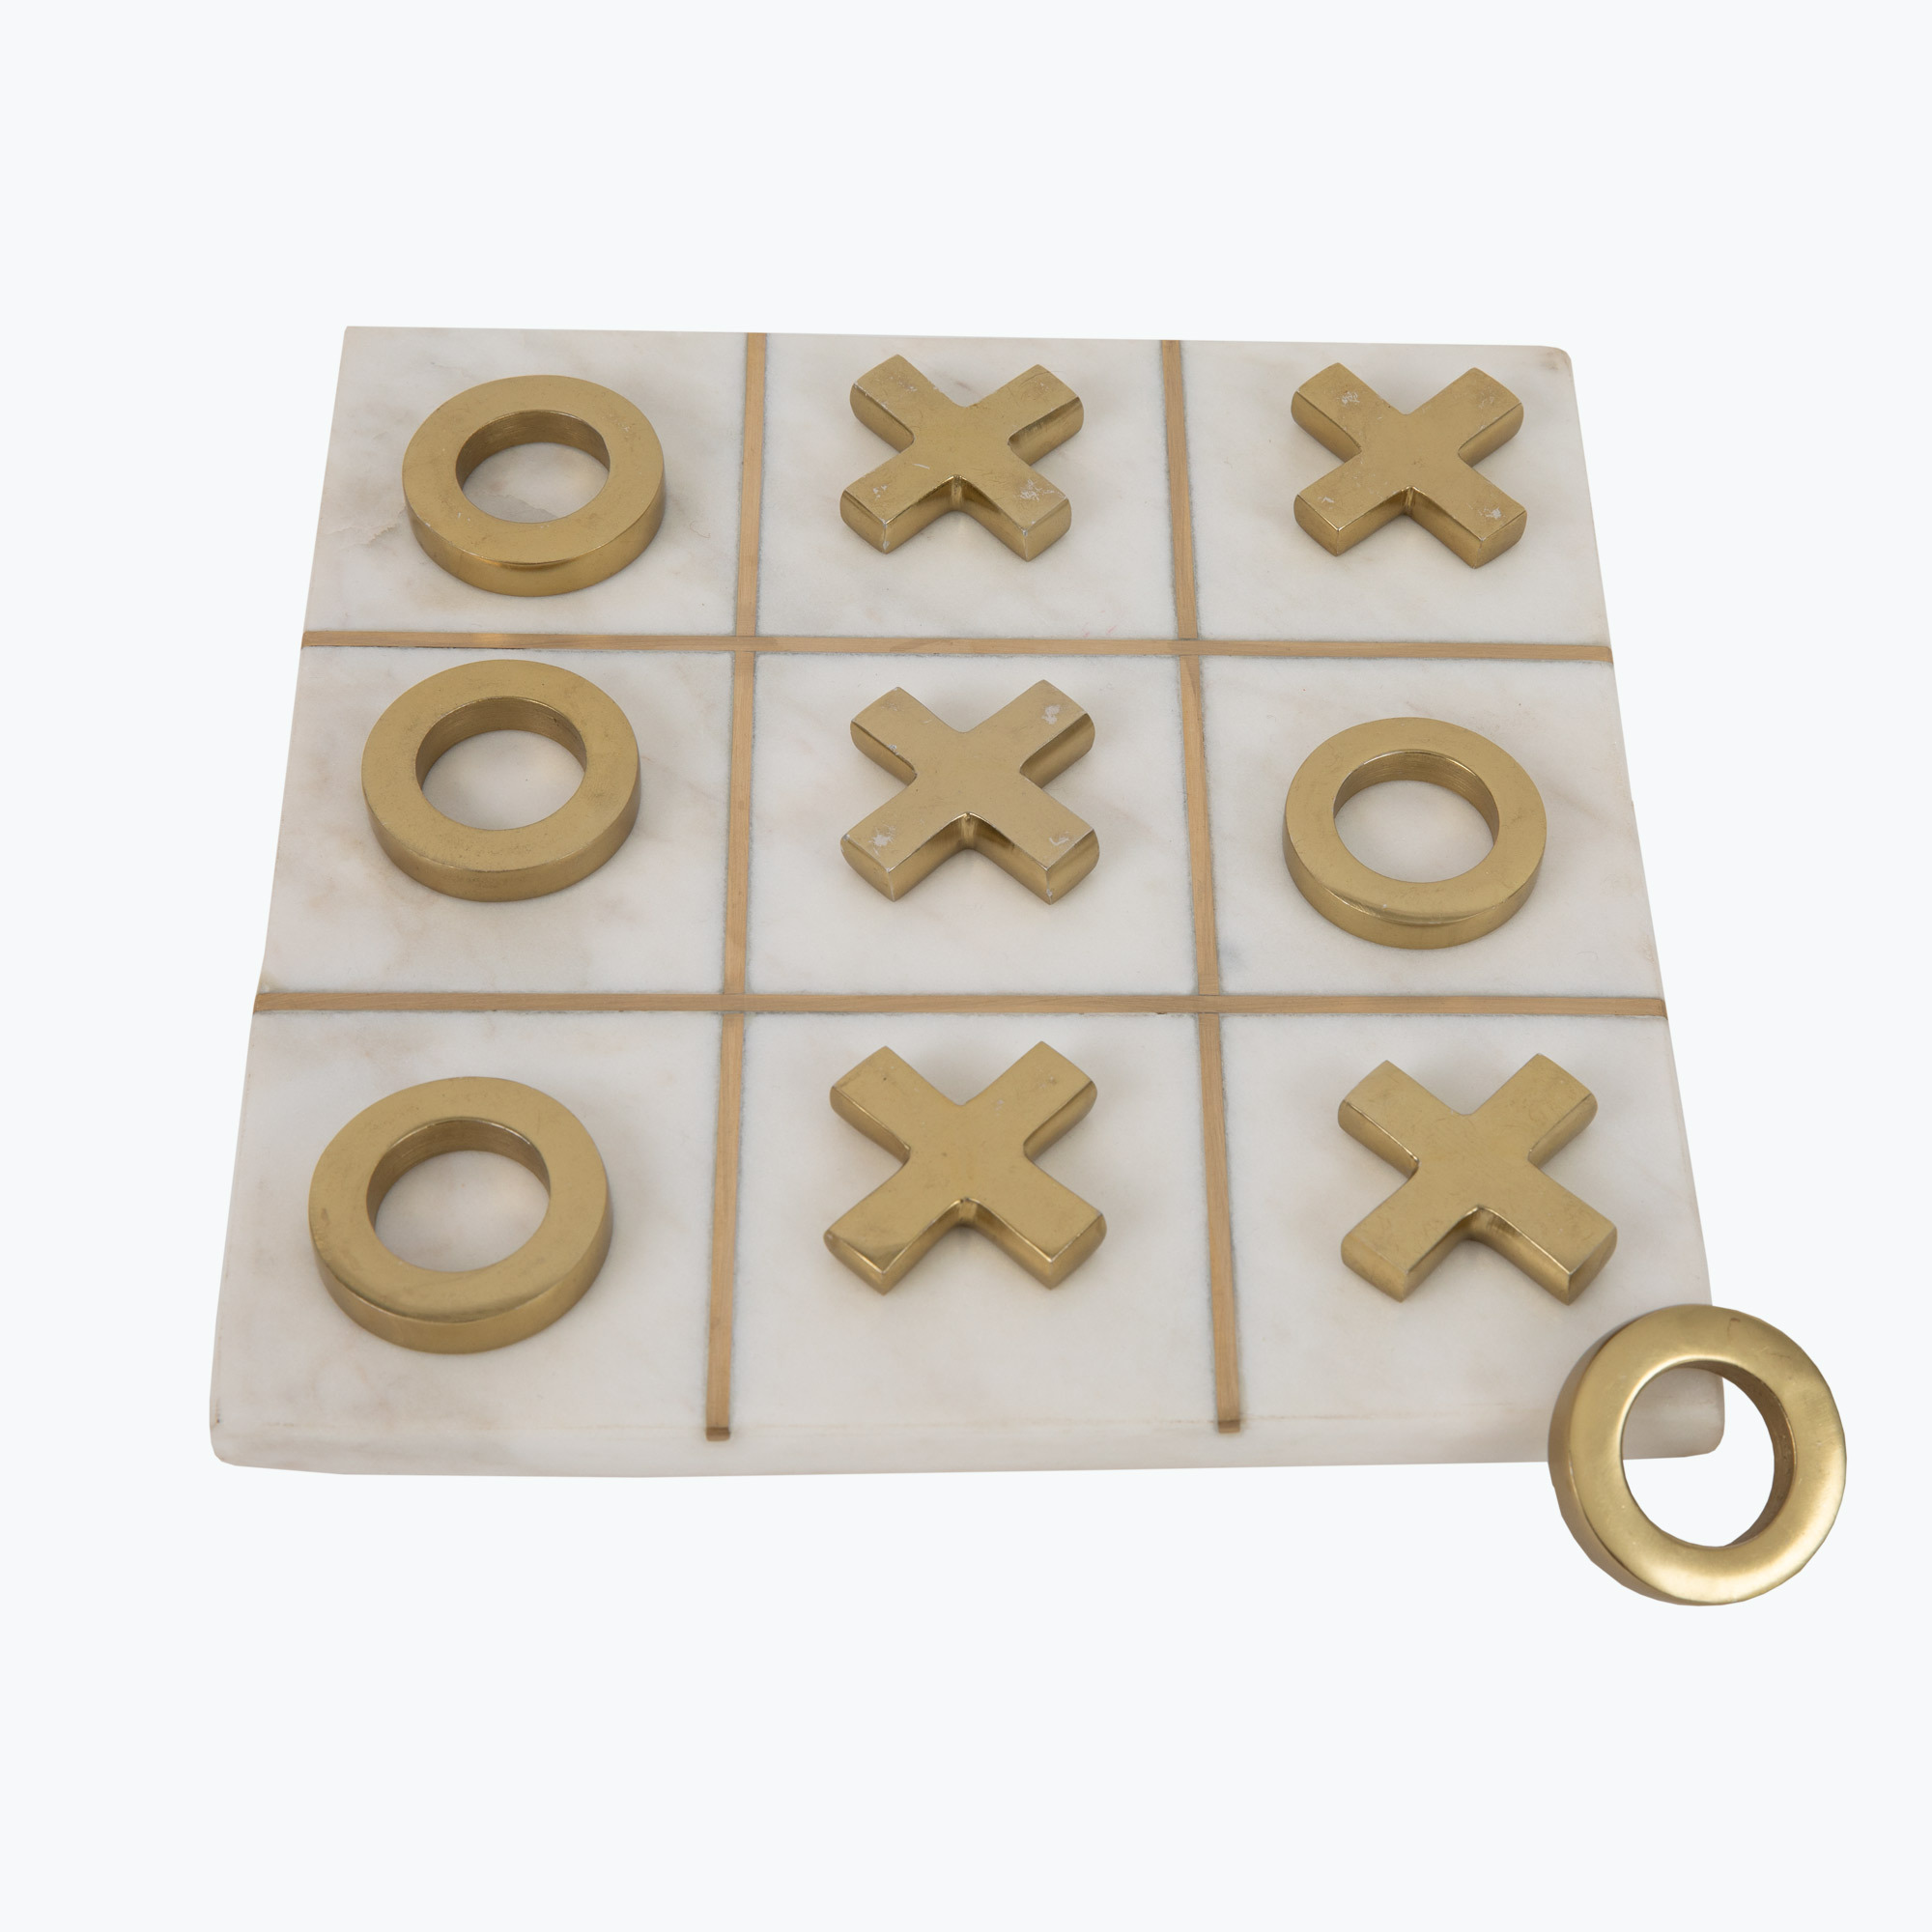 White Marble Tic-Tac-Toe med 10 spelpjäser